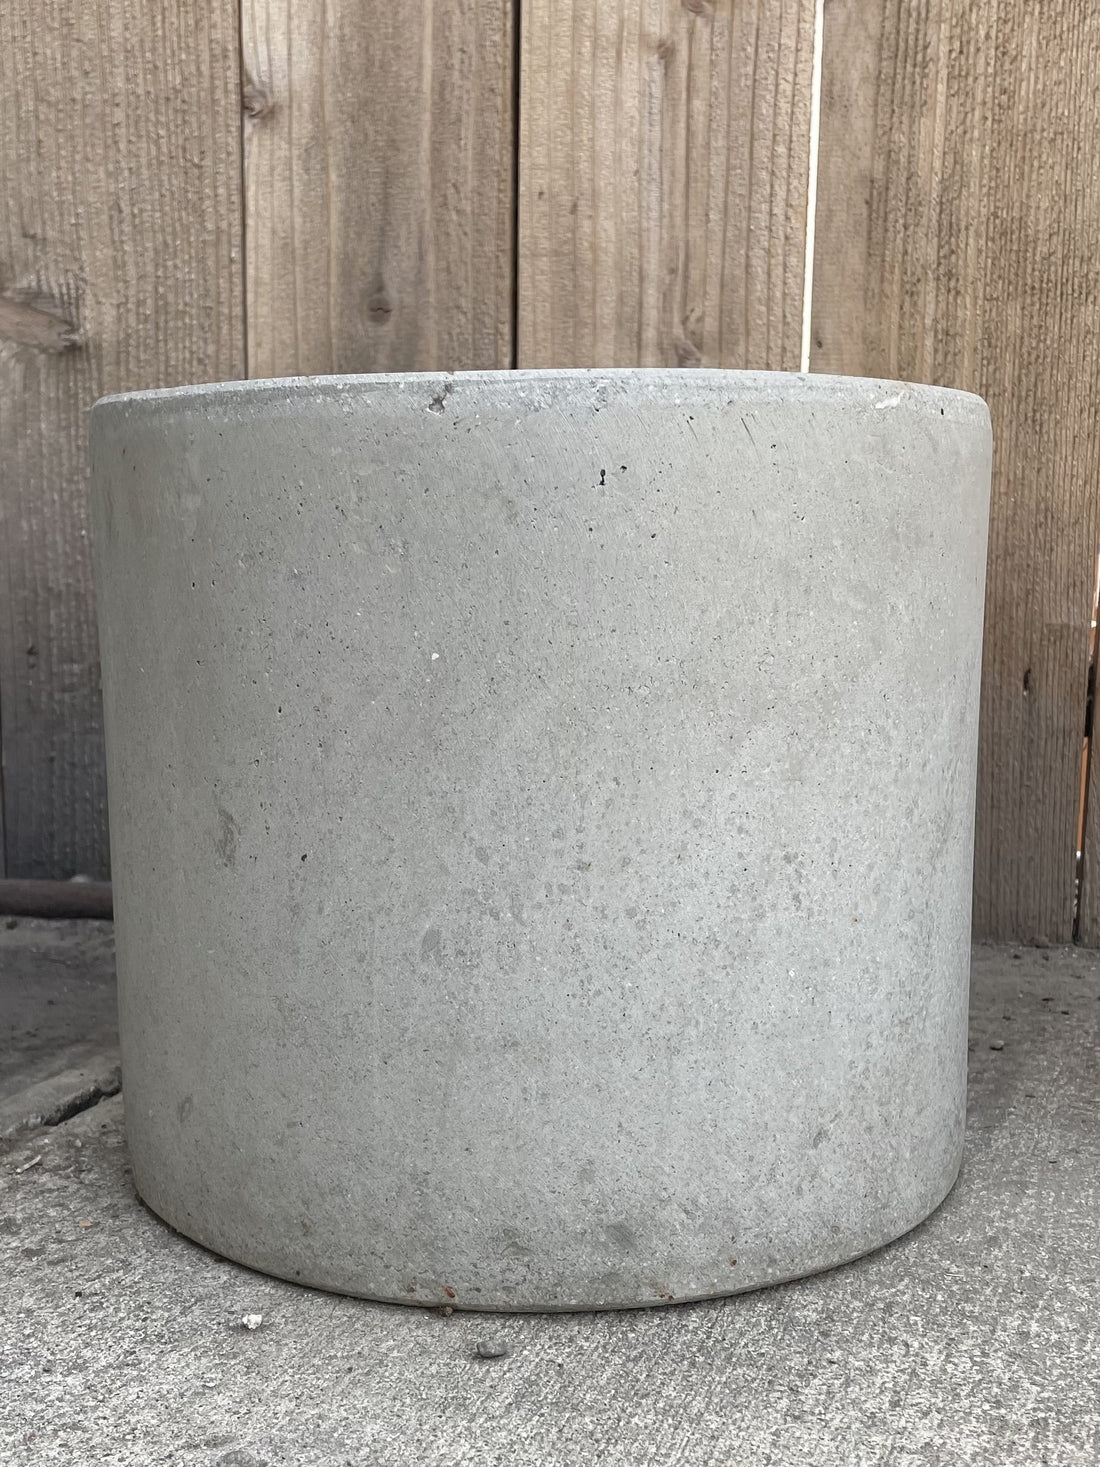 Concrete composite Cylinder Pot 11.25 x 10"